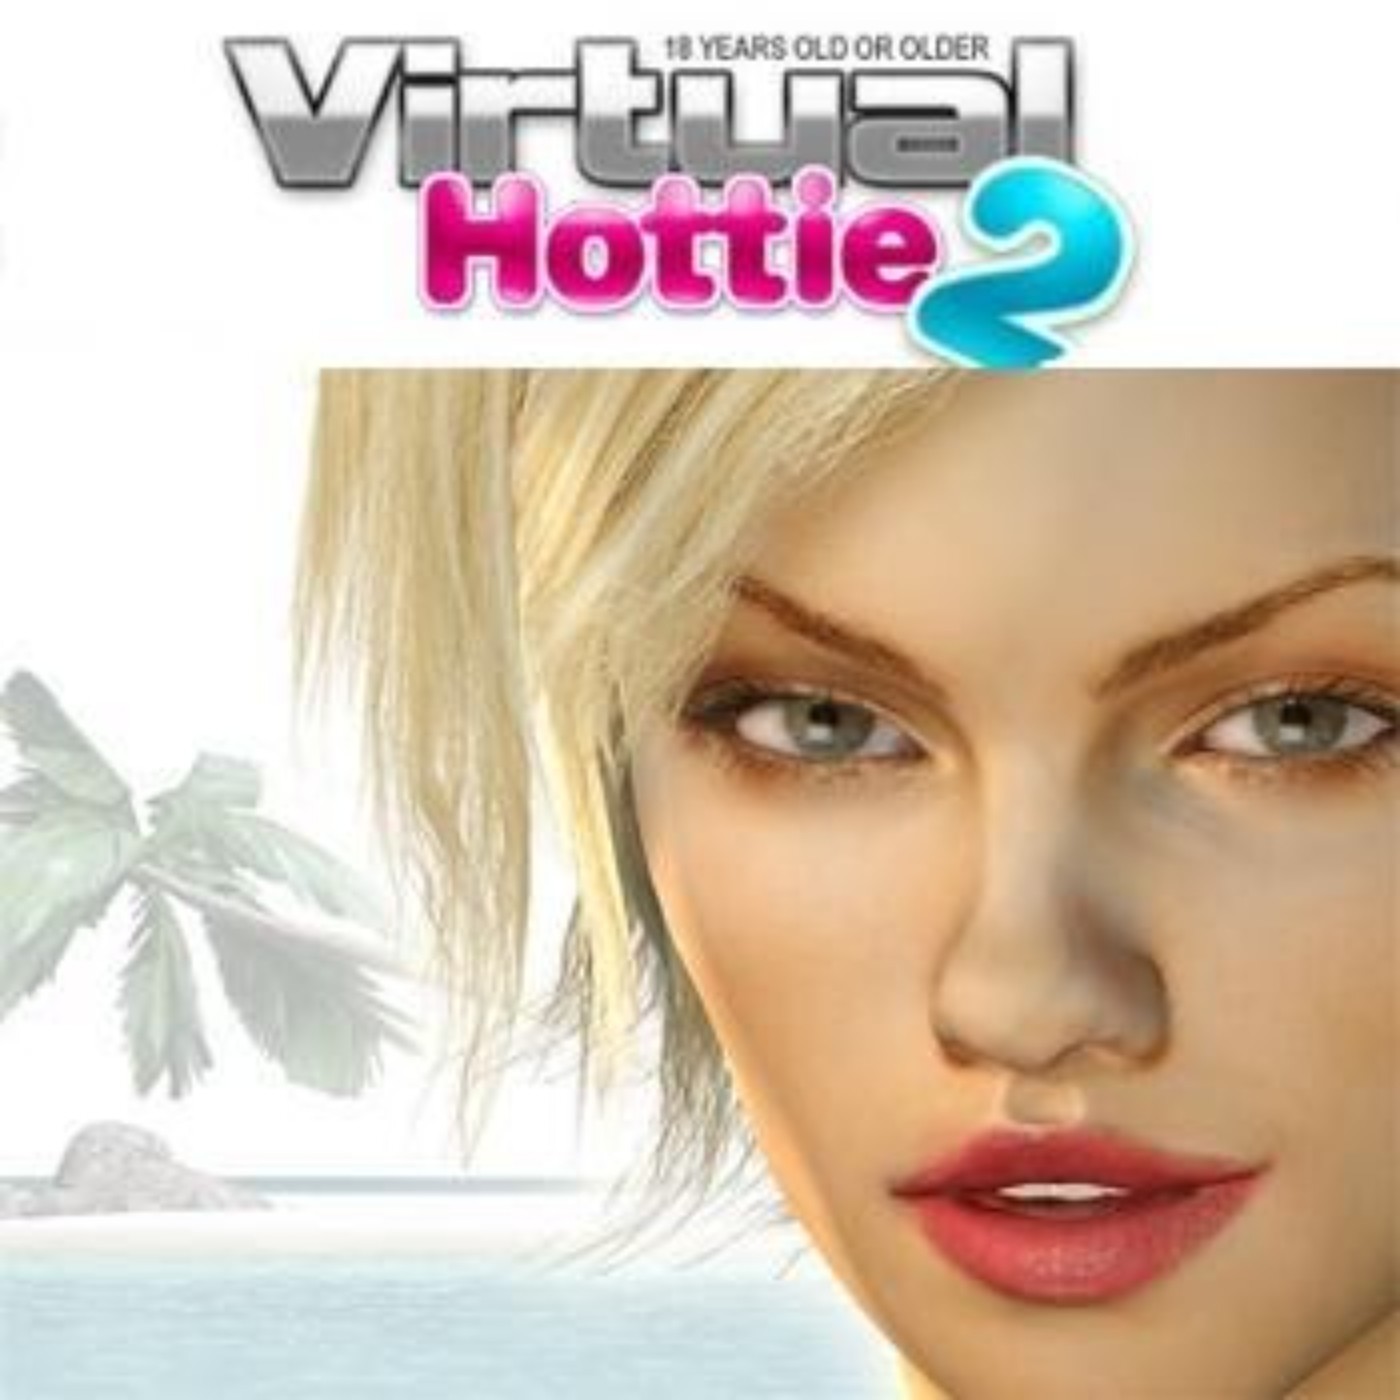 Virtual hottie 2